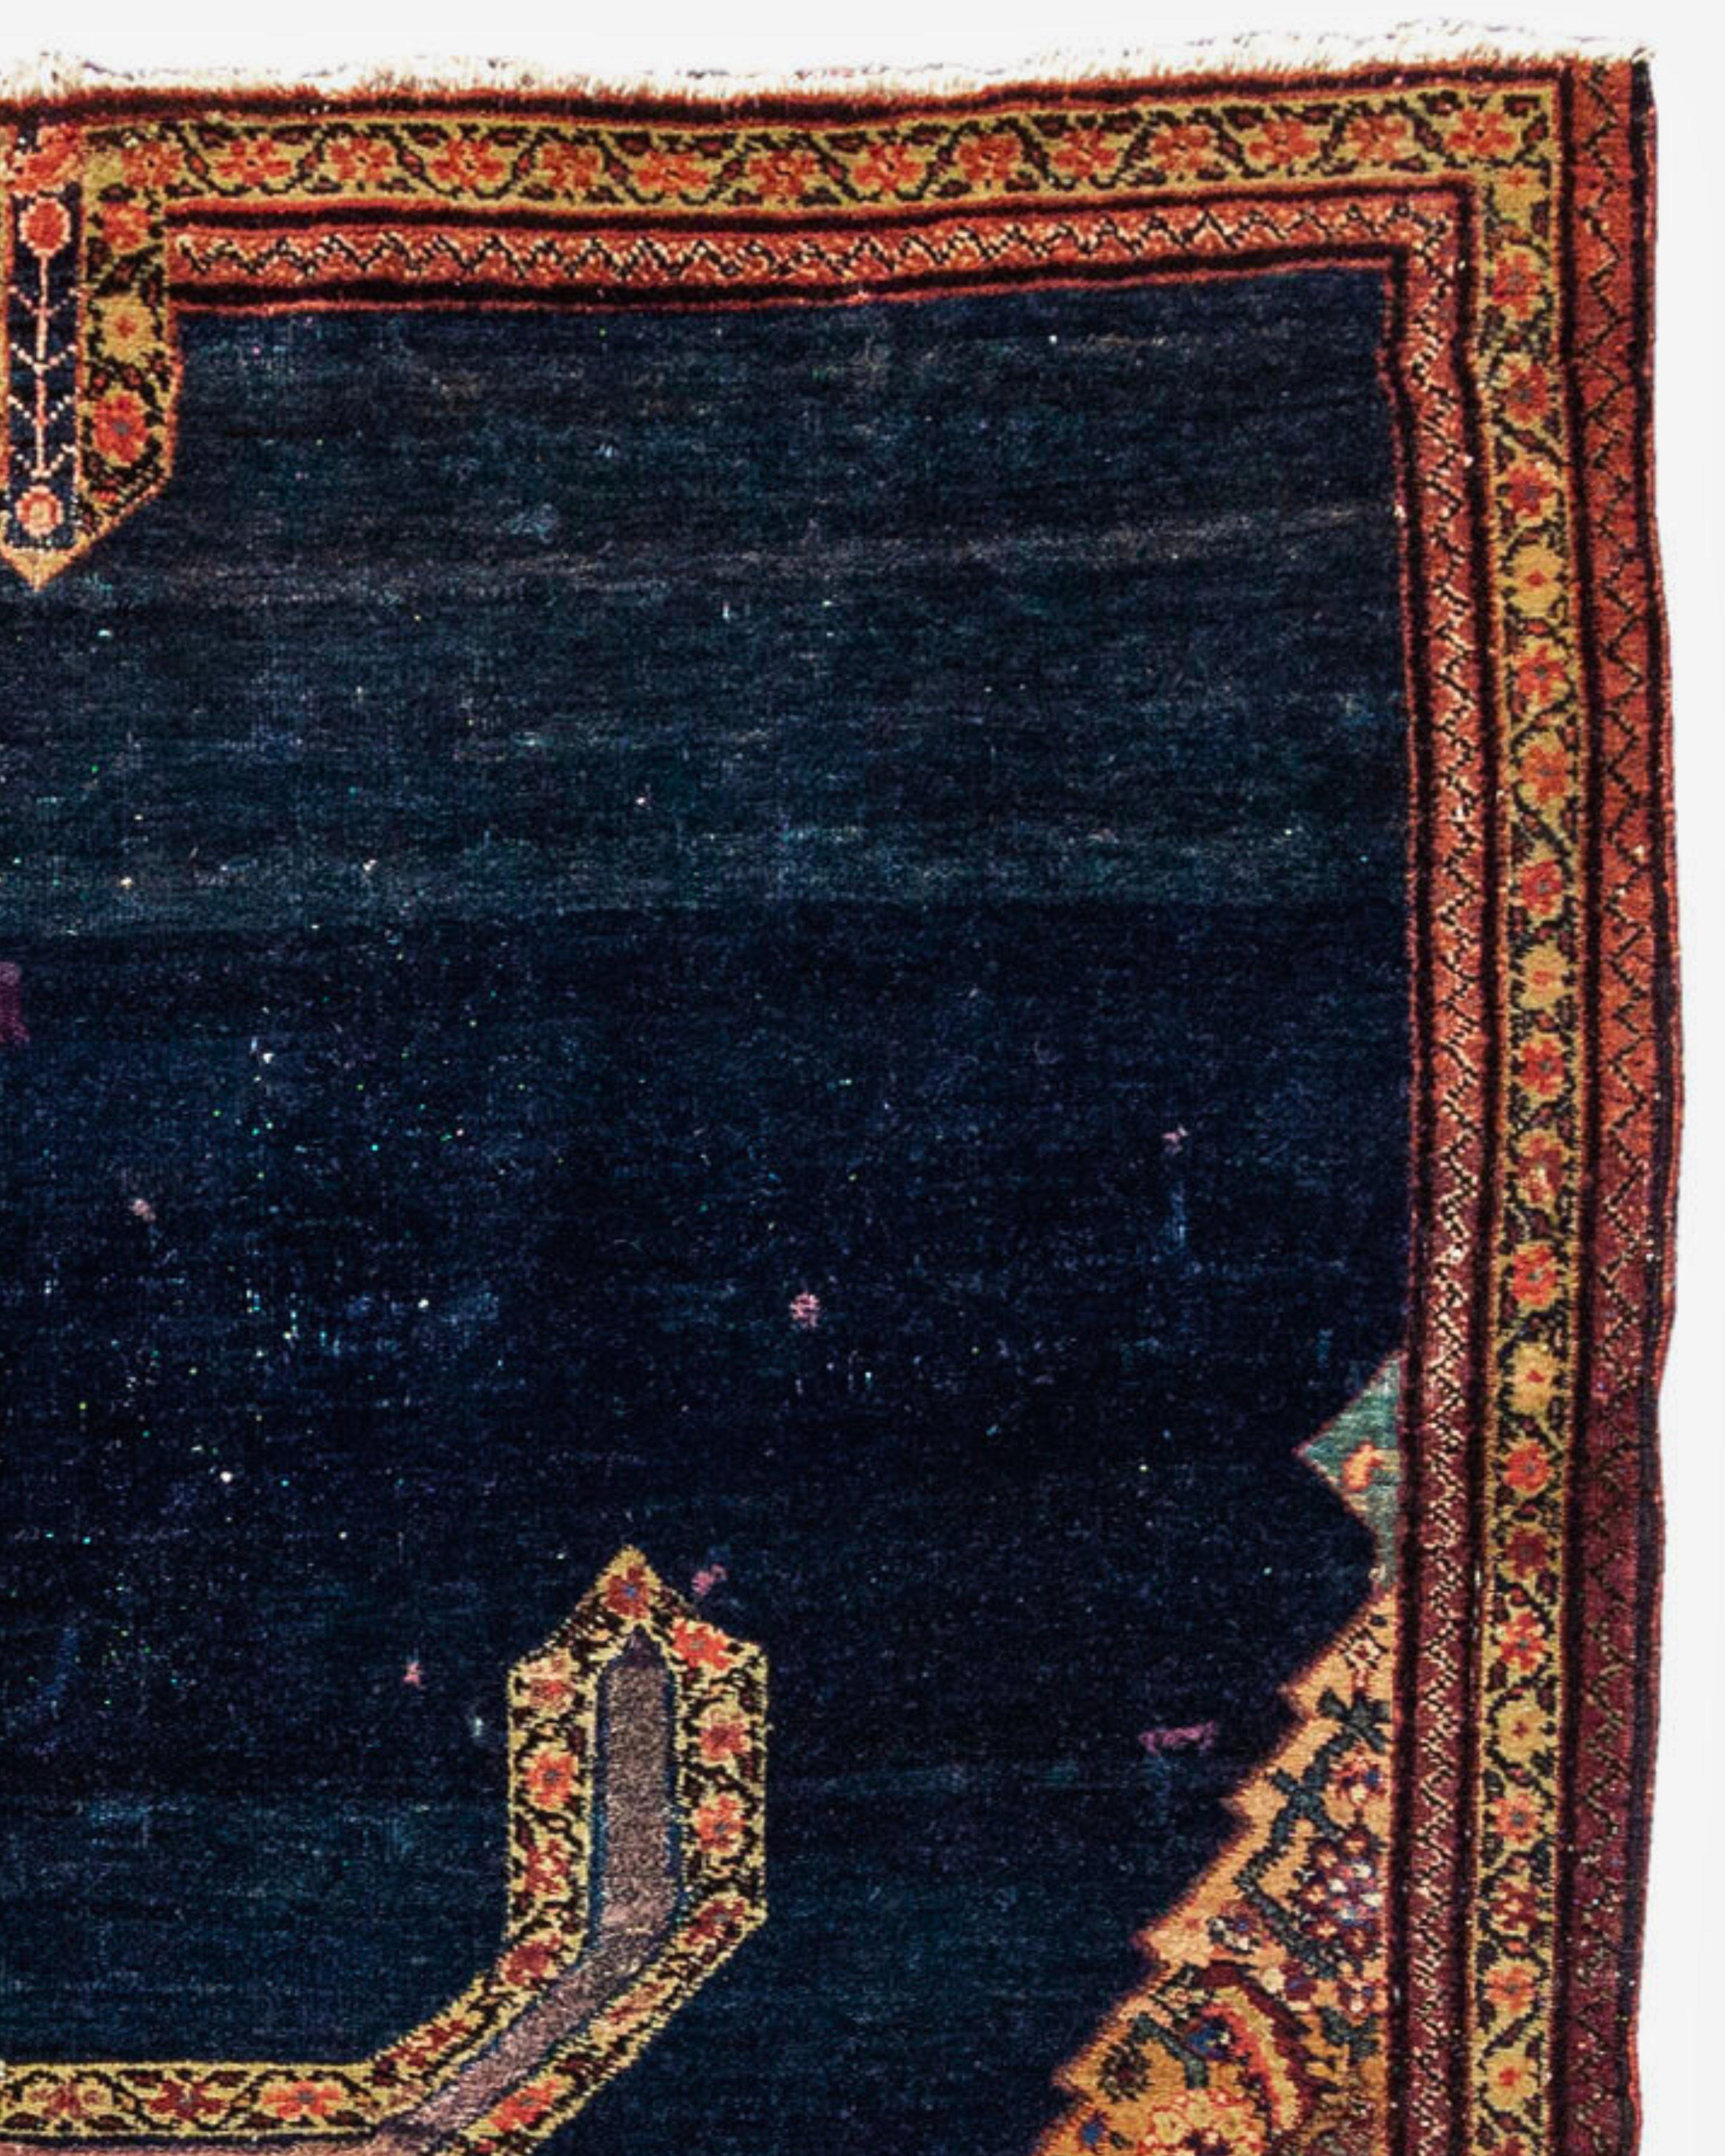 Ancienne couverture de selle persane Fereghan, fin du 19e siècle

Informations supplémentaires :
Dimensions : 3'4